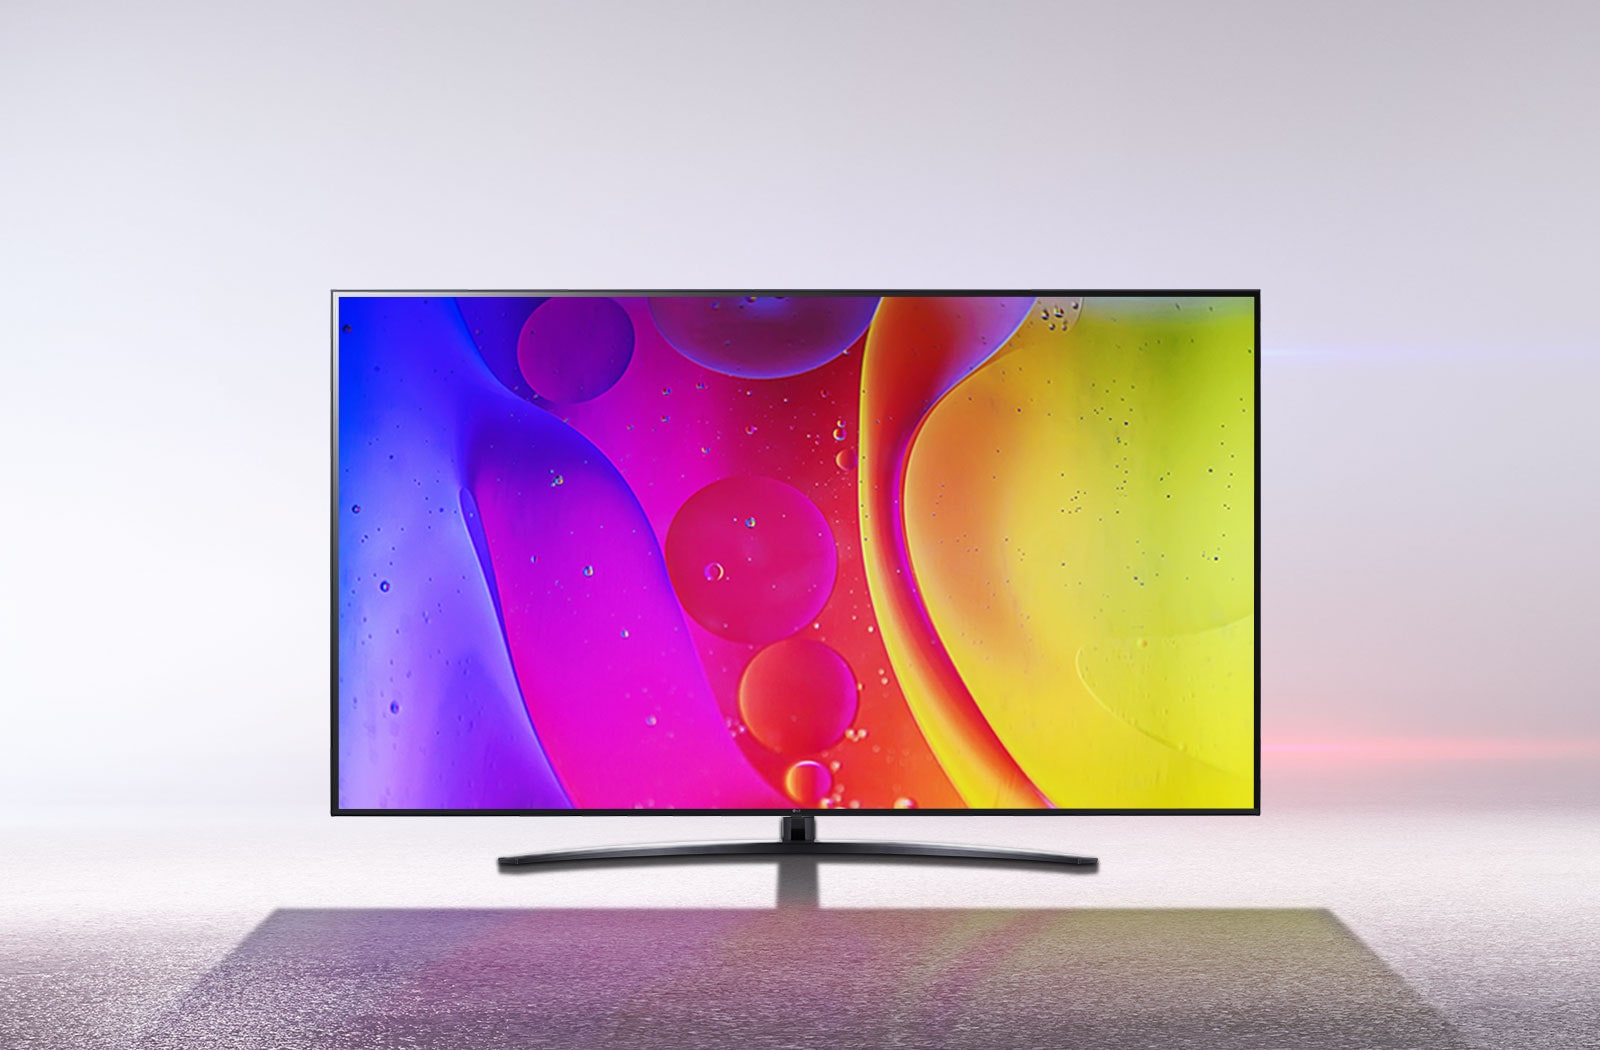 Un téléviseur dans une pièce d’un blanc éclatant projette des couleurs vives et hypnotiques en mouvement sur l’écran.